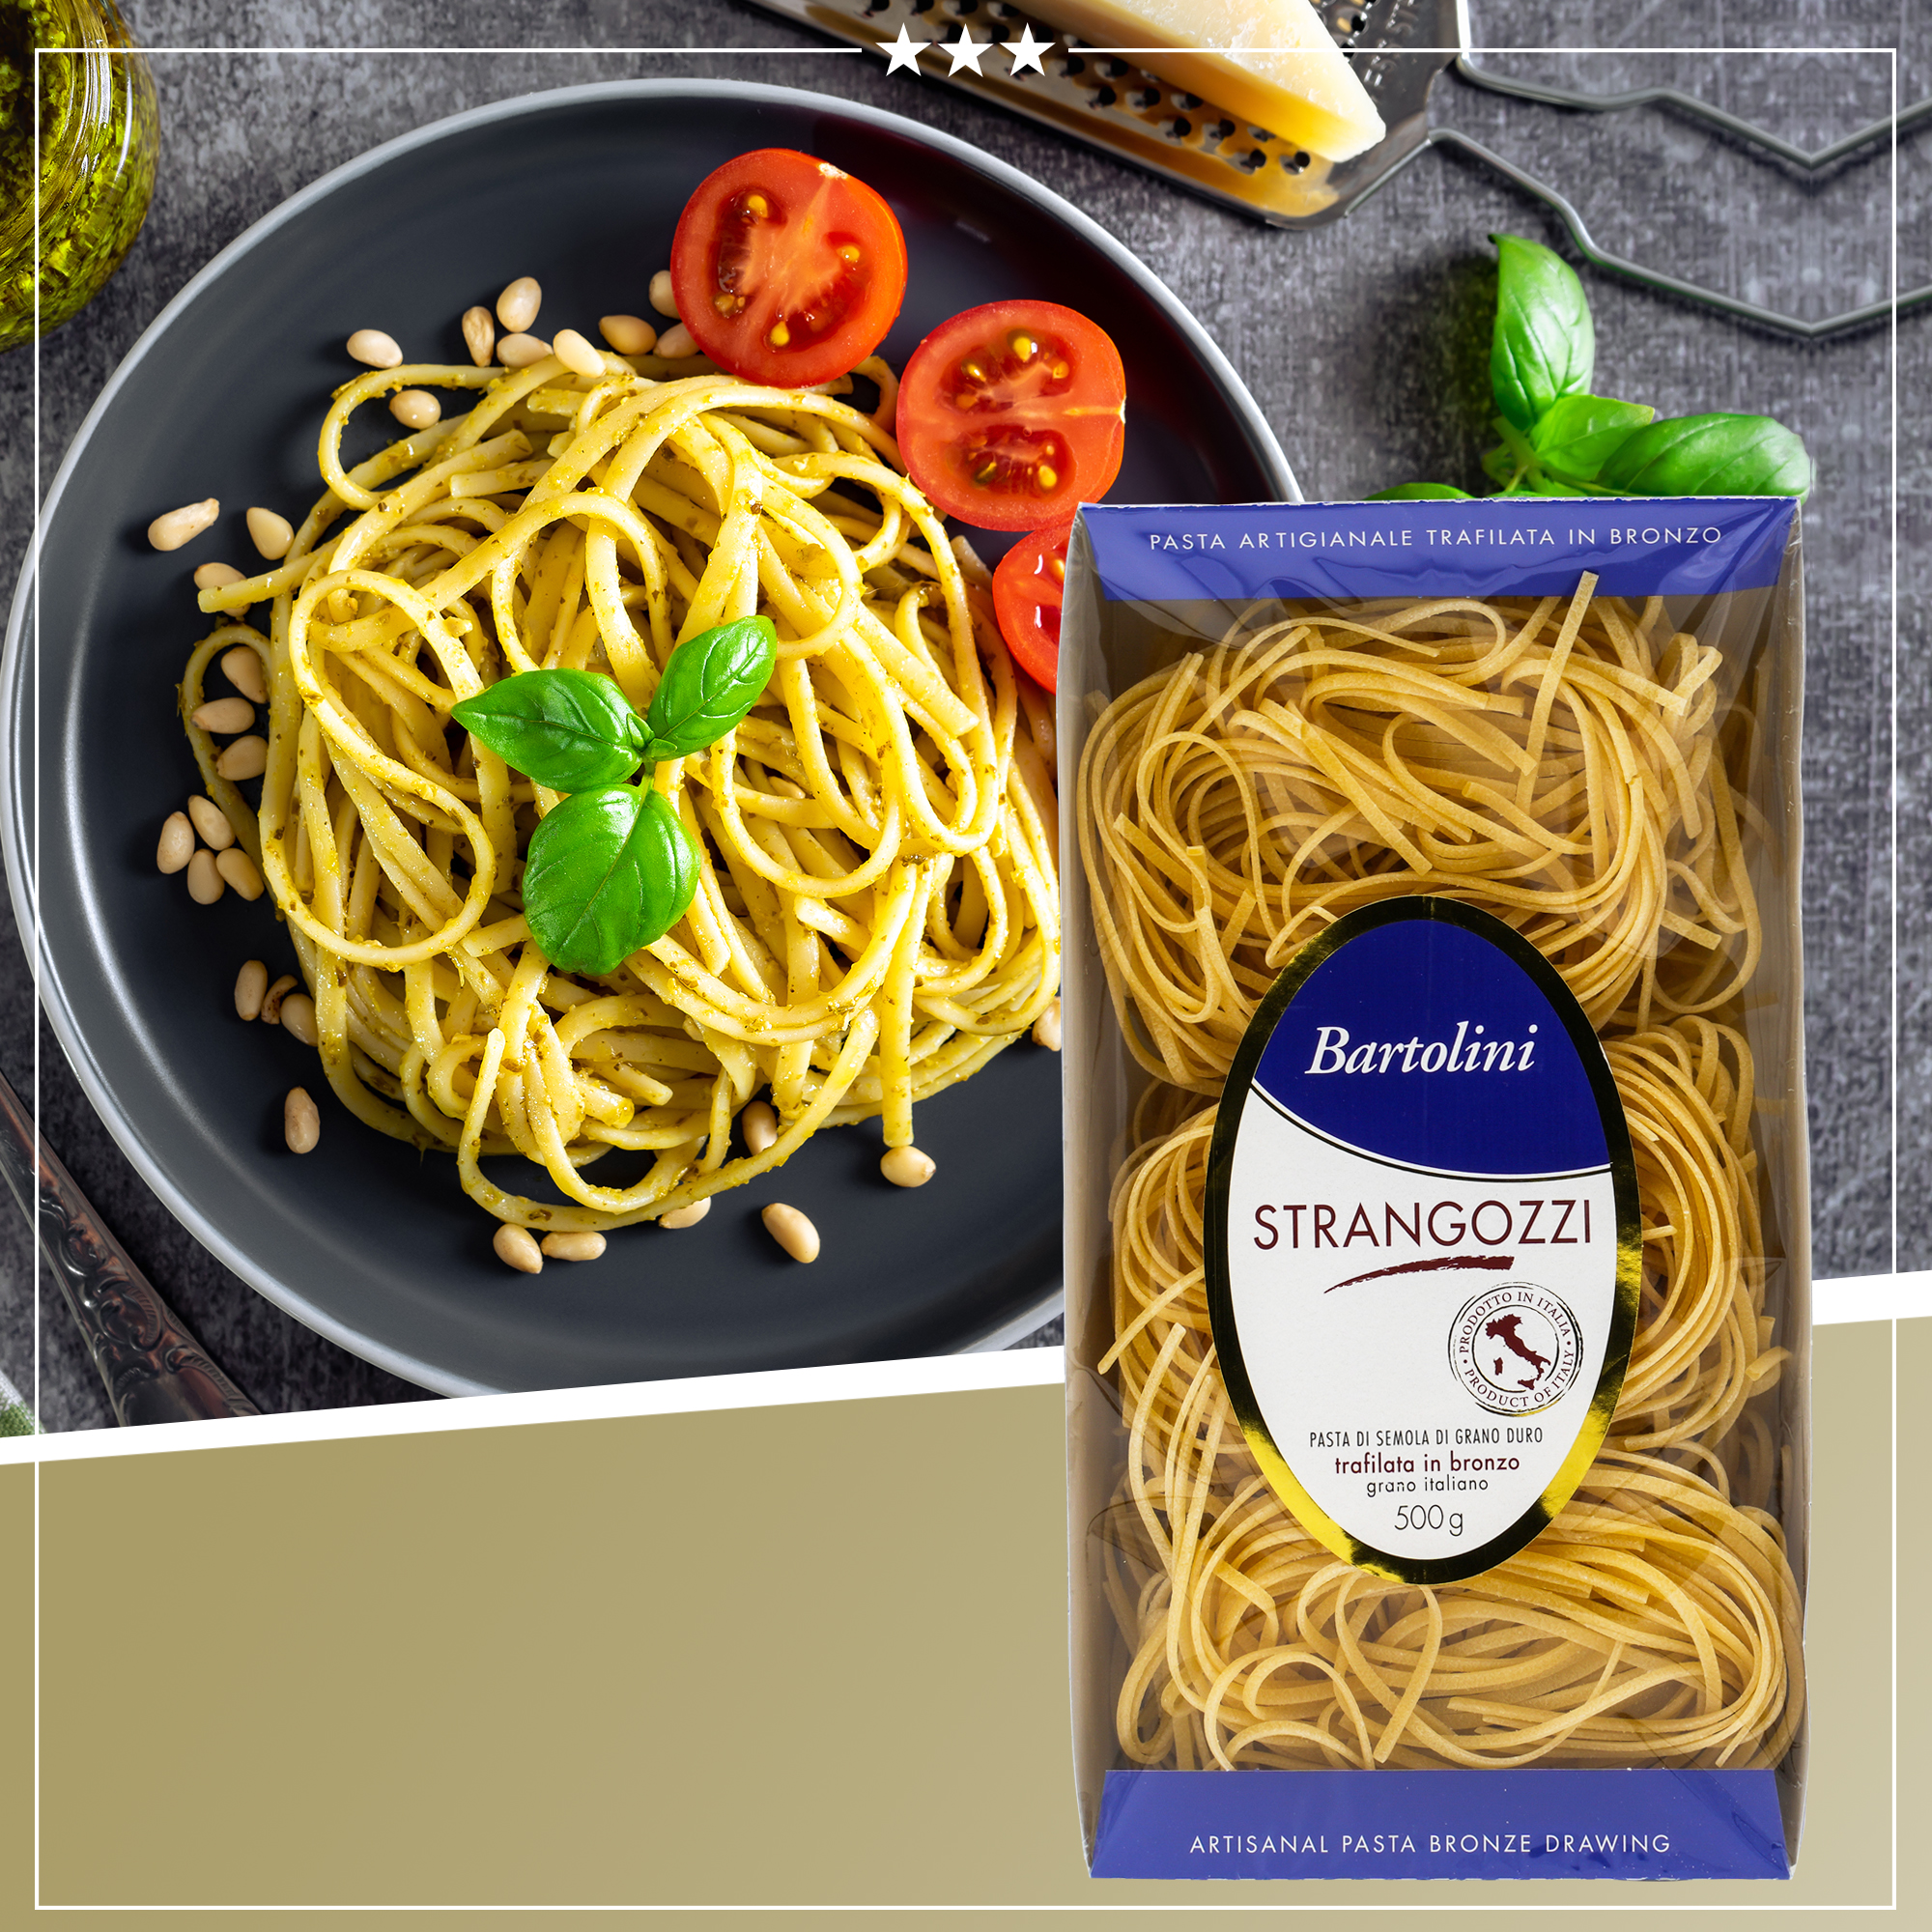 STRANGOZZI | BARTOLINI | 500g | aus Italien | Premium Pasta